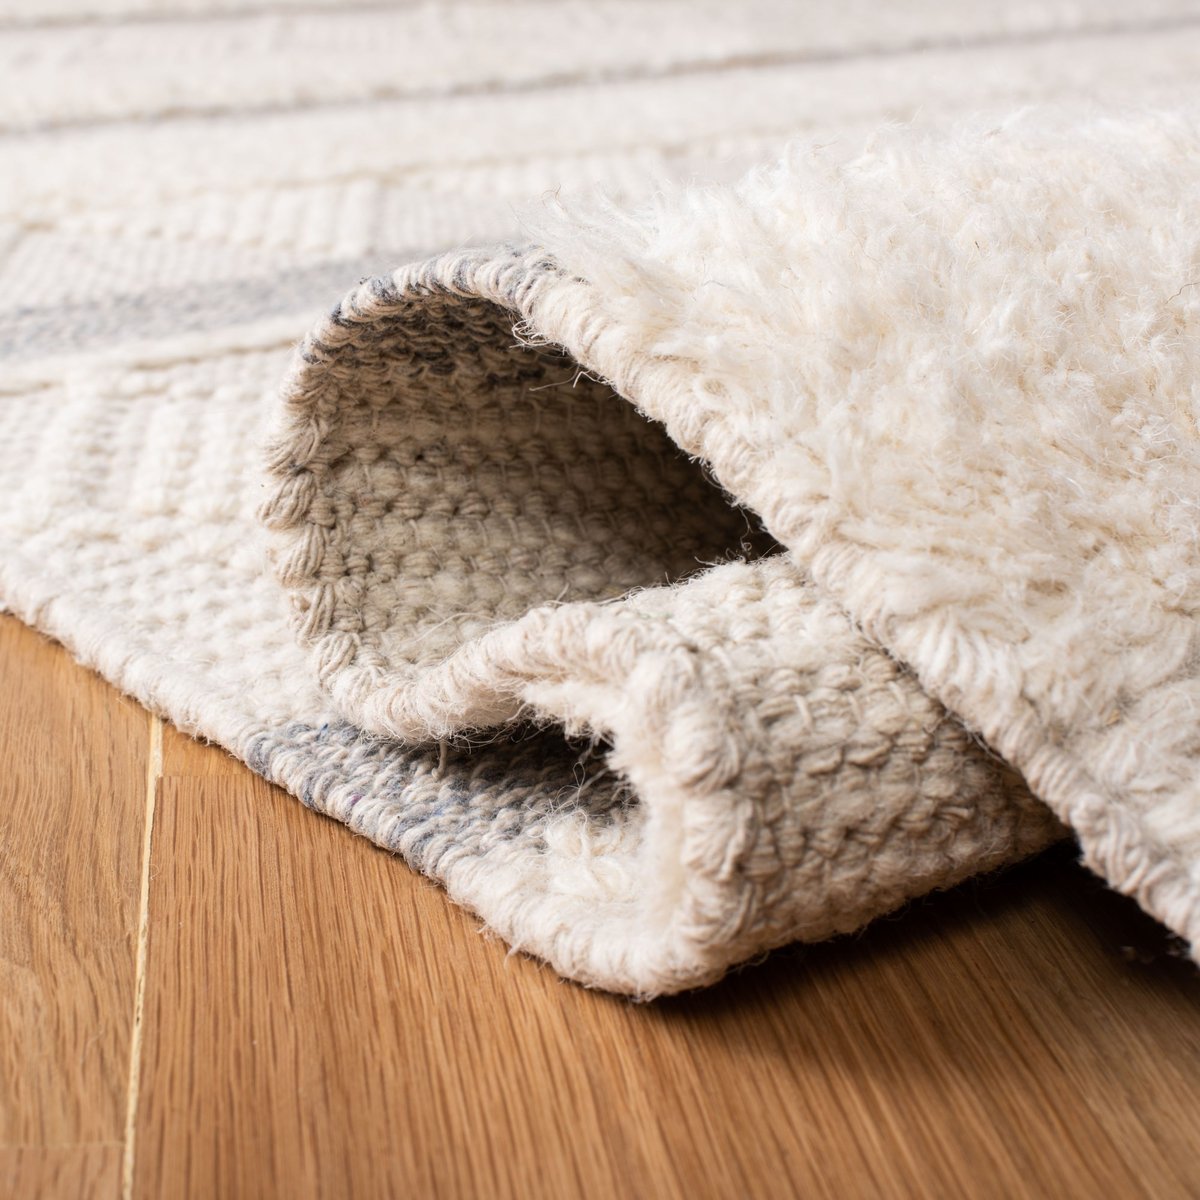 CARPET, plain weave, Plain White Beige, Kateha for Norrgavel, approx. 300  x 200 cm. Carpets & Textiles - Carpets - Auctionet